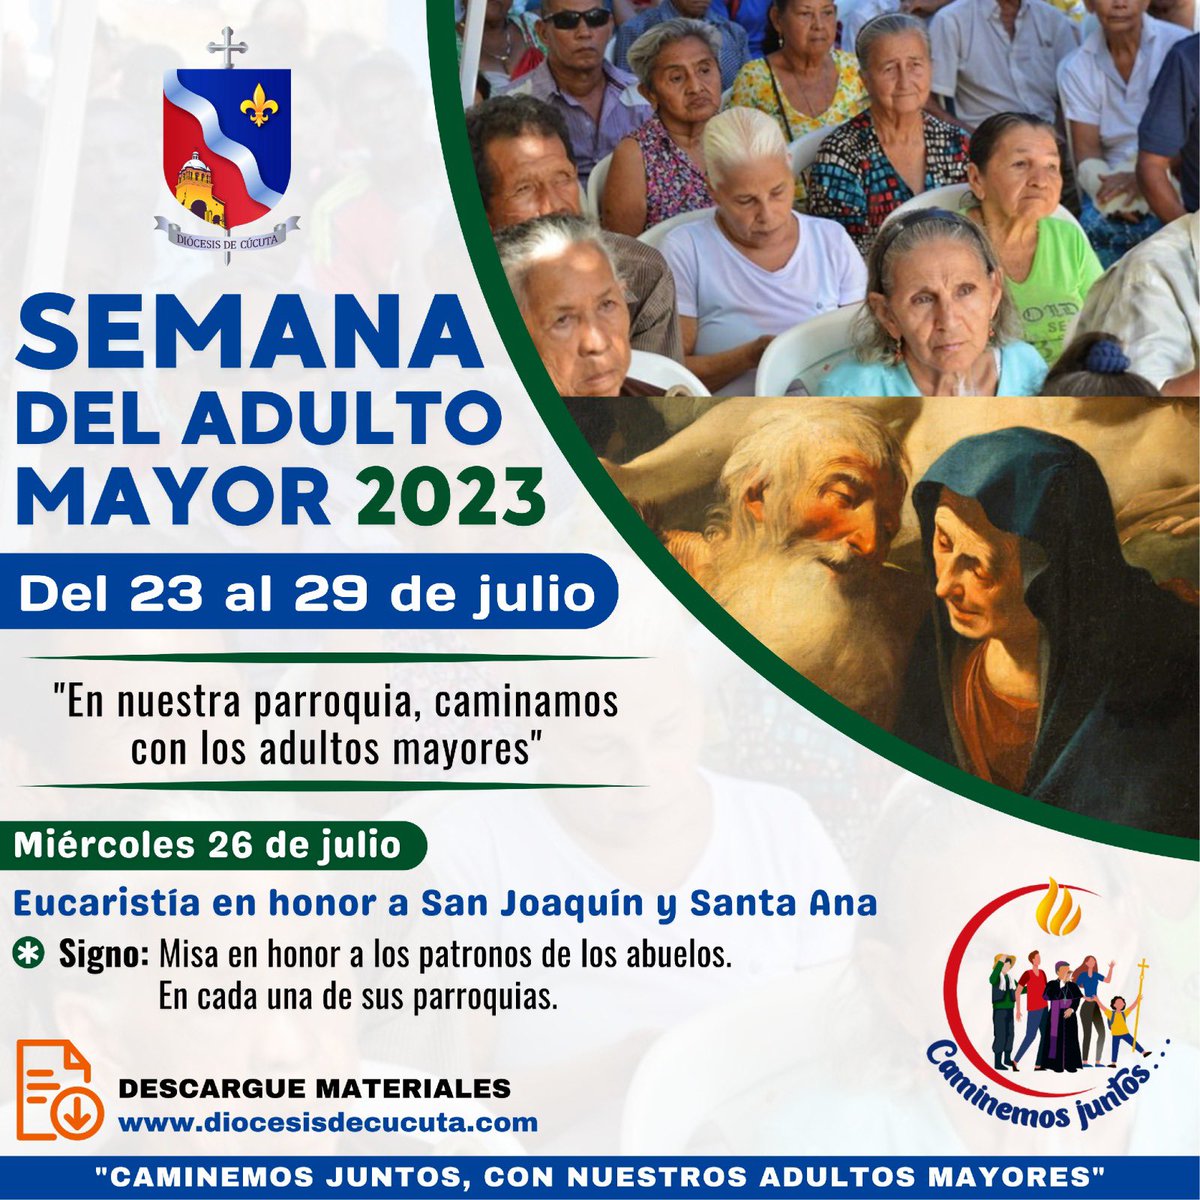 Los invitamos a participar de la #SantaMisa en sus comunidades, en esta #SemanaDelAdultoMayor. Hoy, recordamos a Santa Ana y San Joaquín, patronos de los #Abuelos. #CelebremosJuntos.